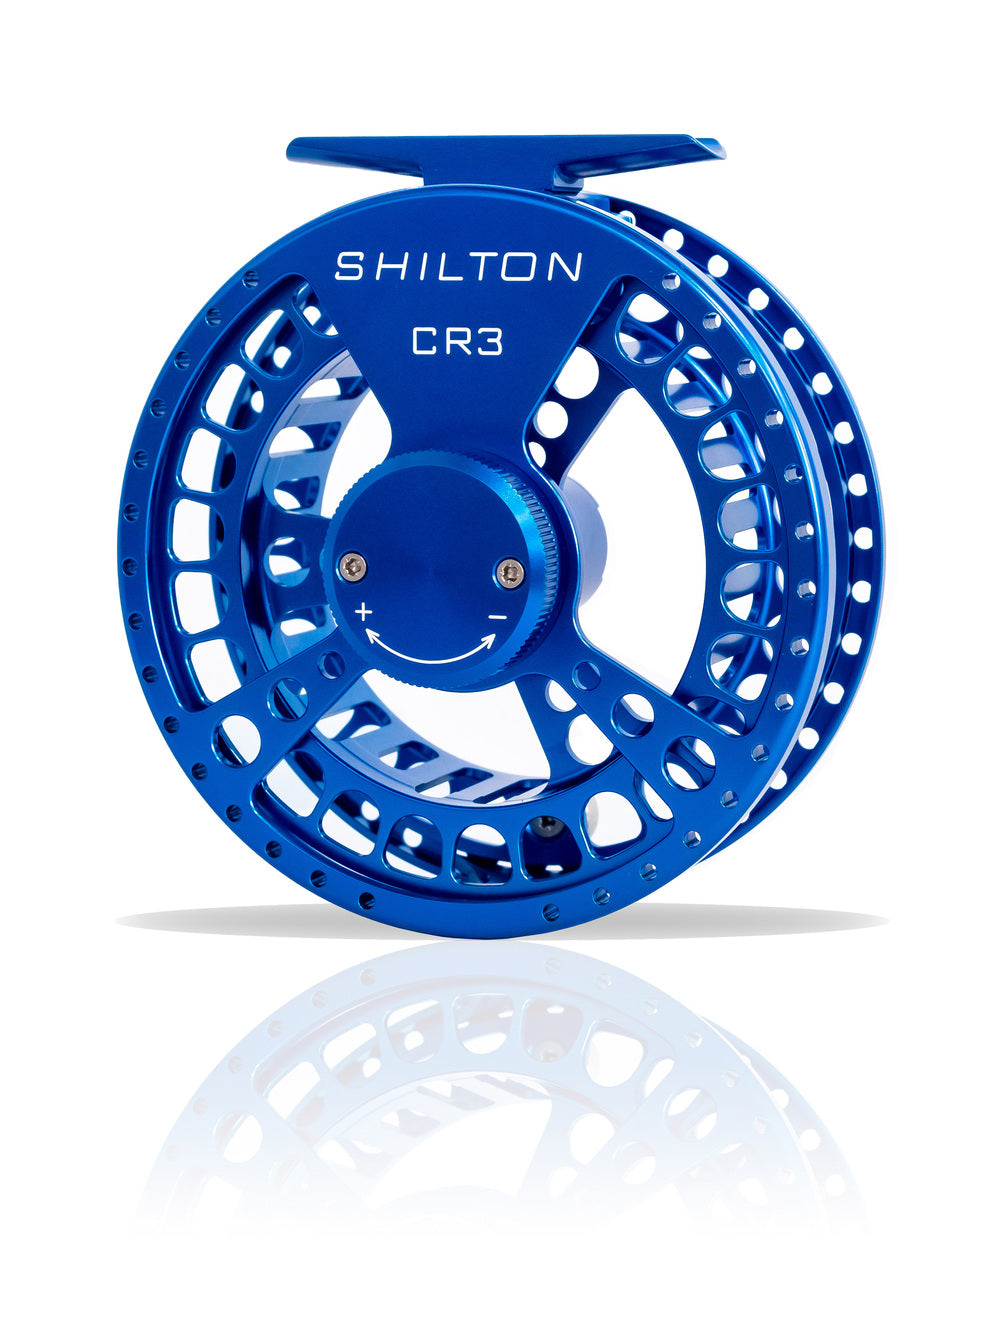 Shilton CR3 Reels (5-6wt) in Blue